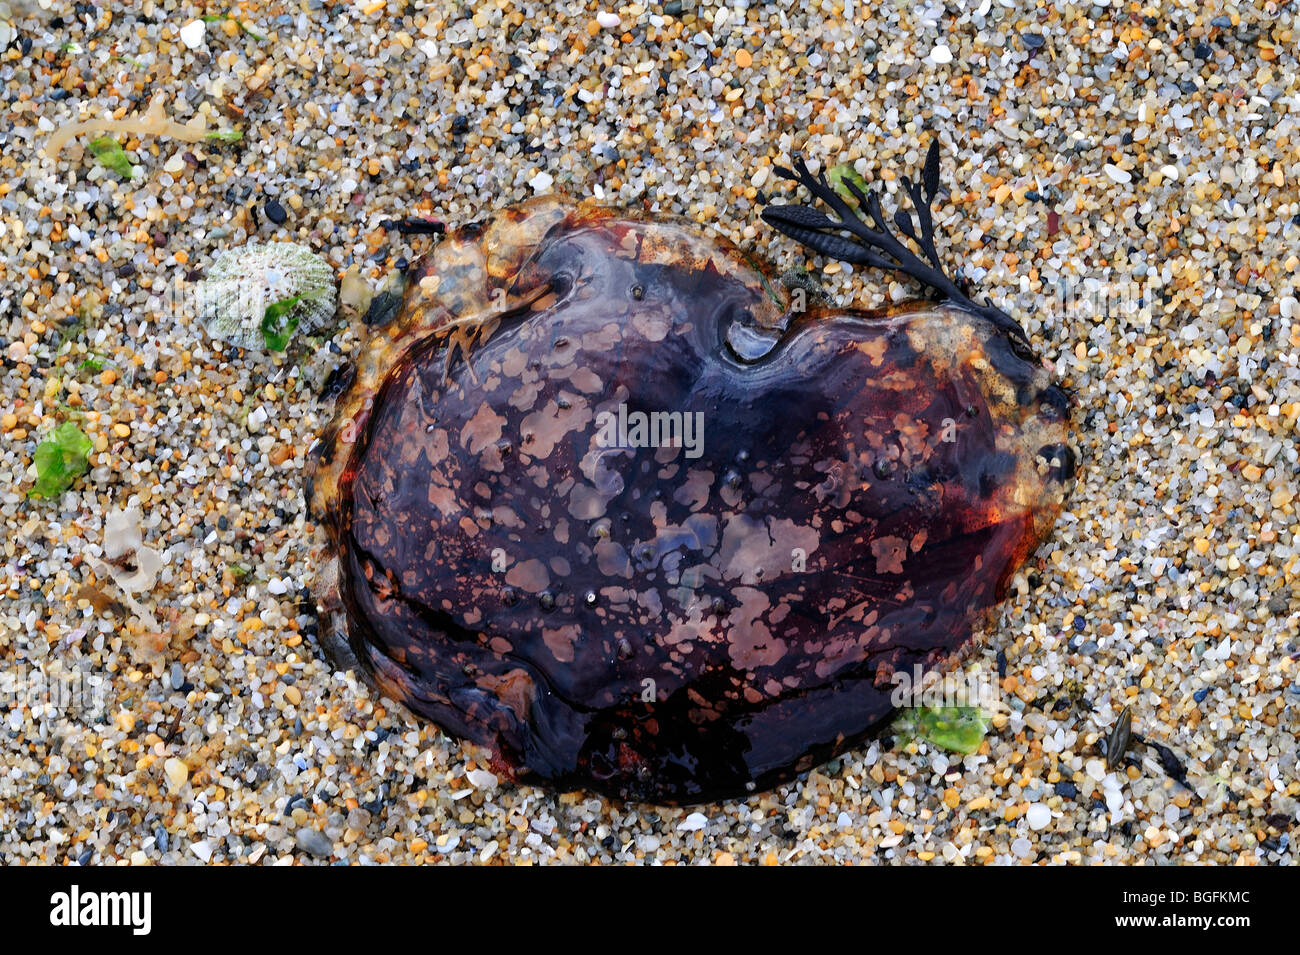 Méduse à crinière de lion / sèche gelée (Cyanea capillata) s'est échoué sur la plage, Bretagne, France Banque D'Images